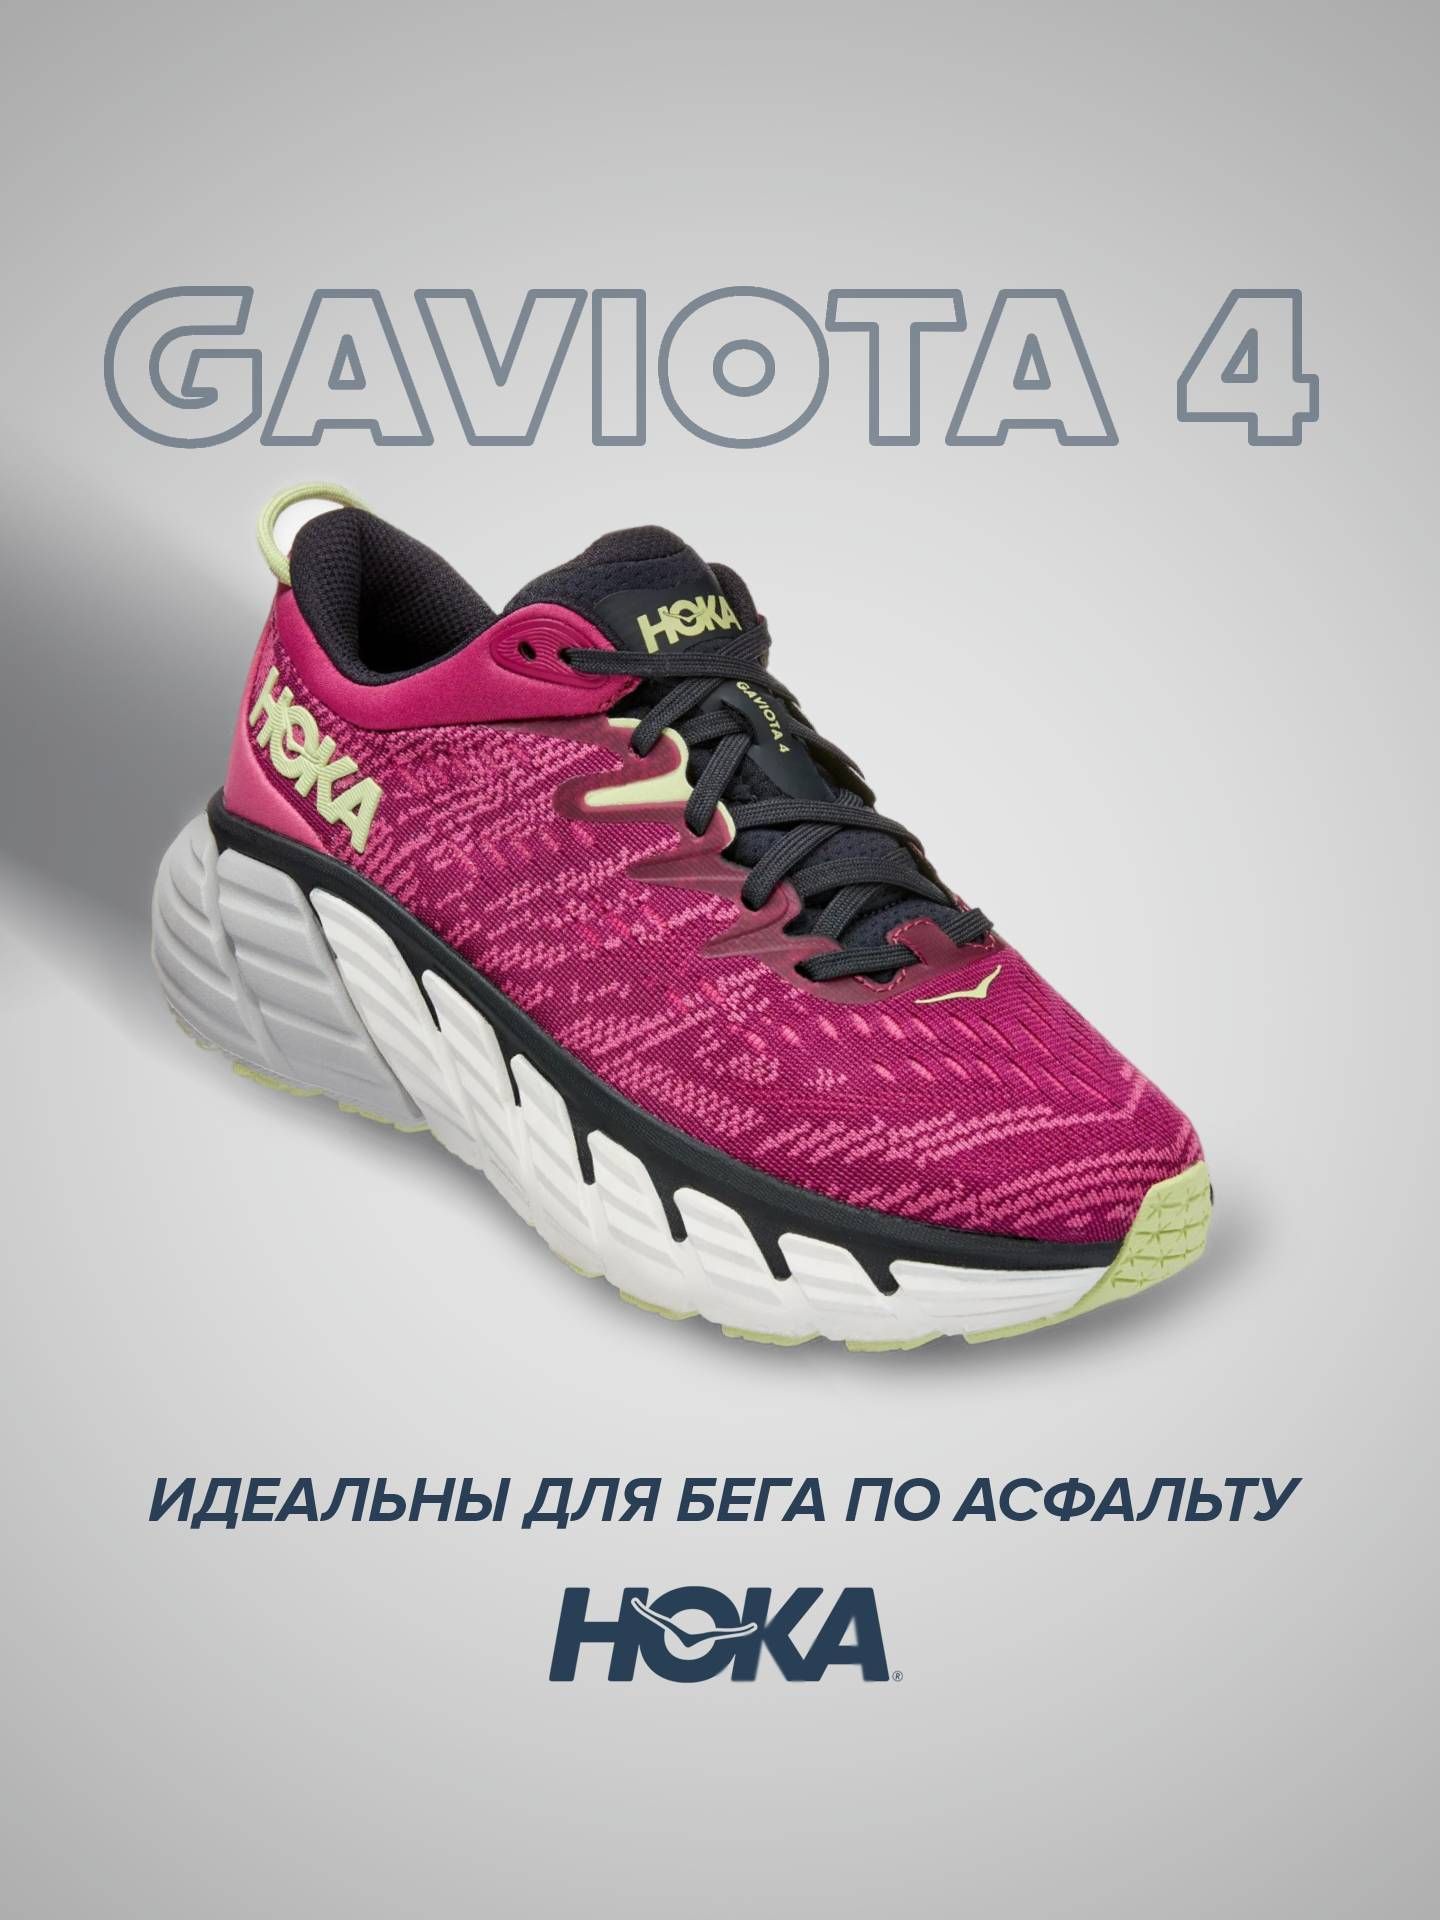 кроссовки женские Hoka GAVIOTA 4 розовые 7.5 US